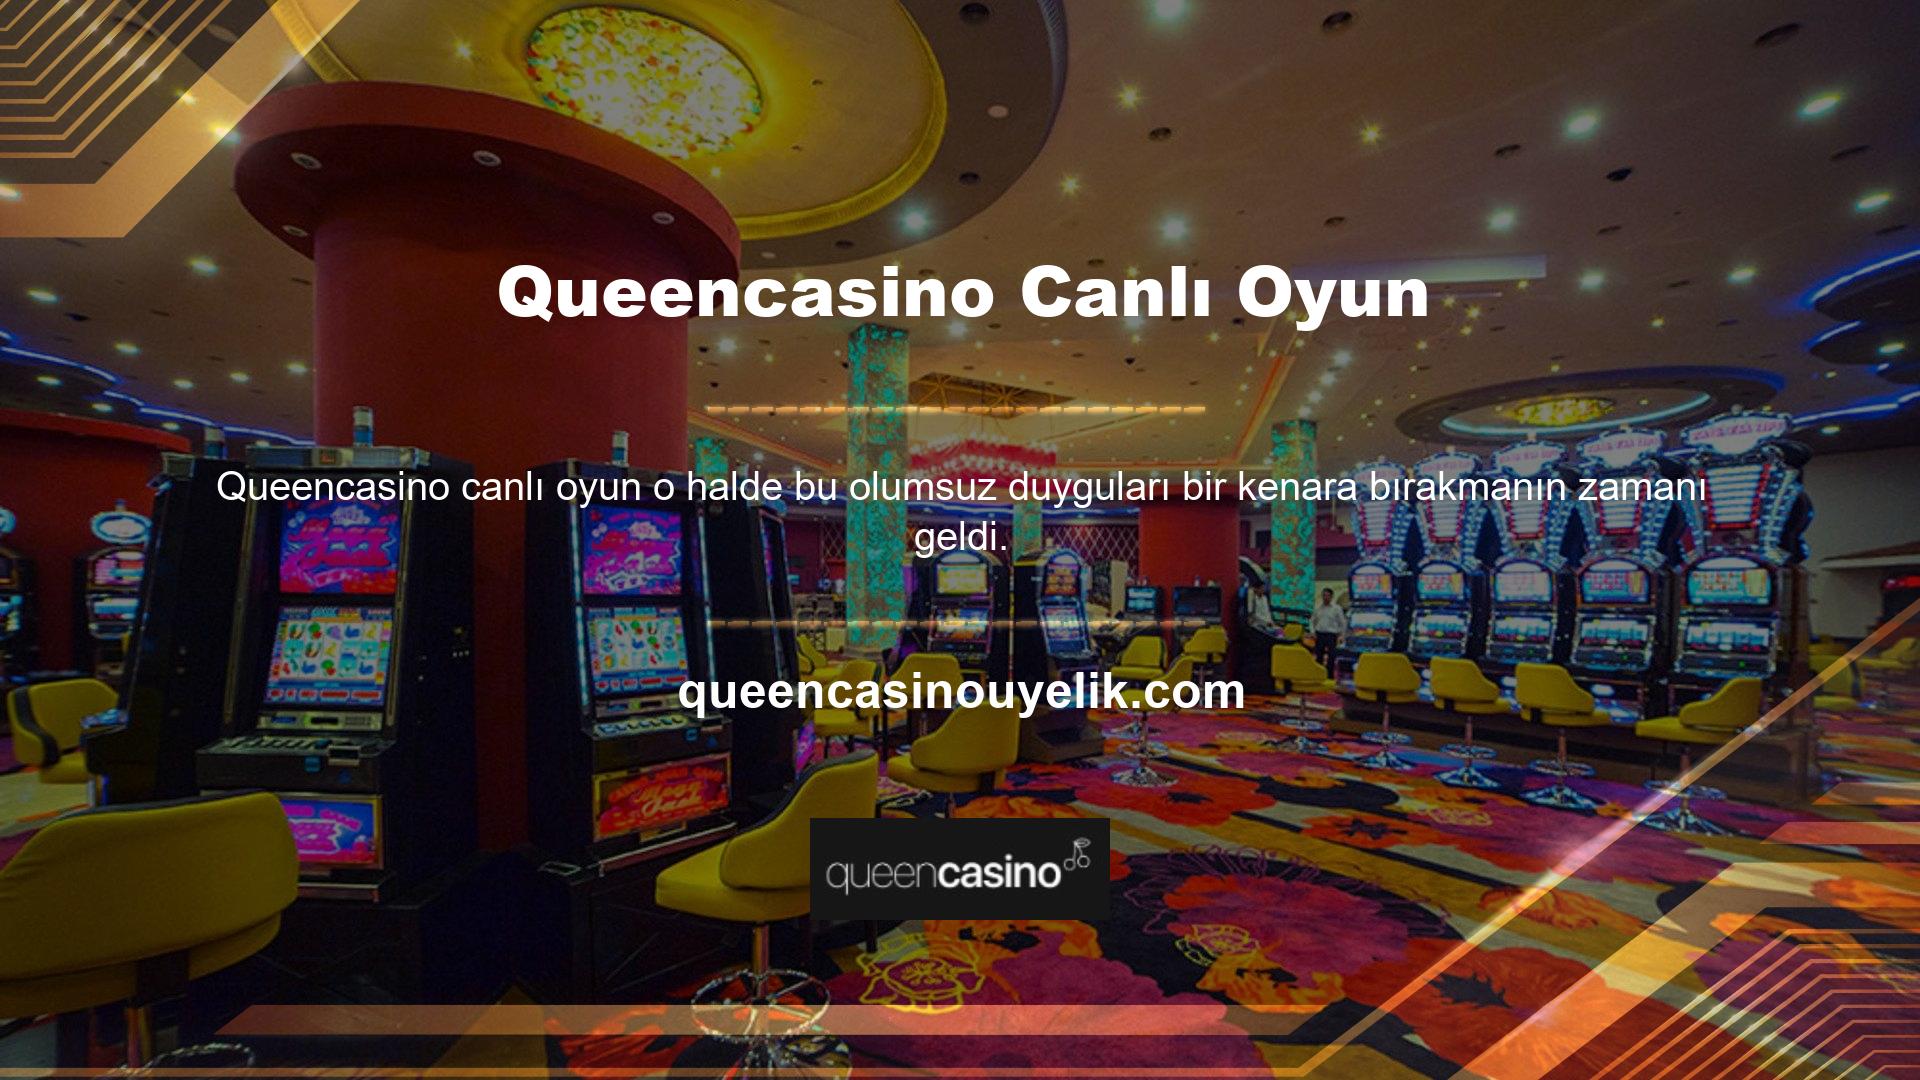 Sevgili Queencasino, Türkiye'deki tecrübesiyle canlı oyunlar her zaman mevcuttur